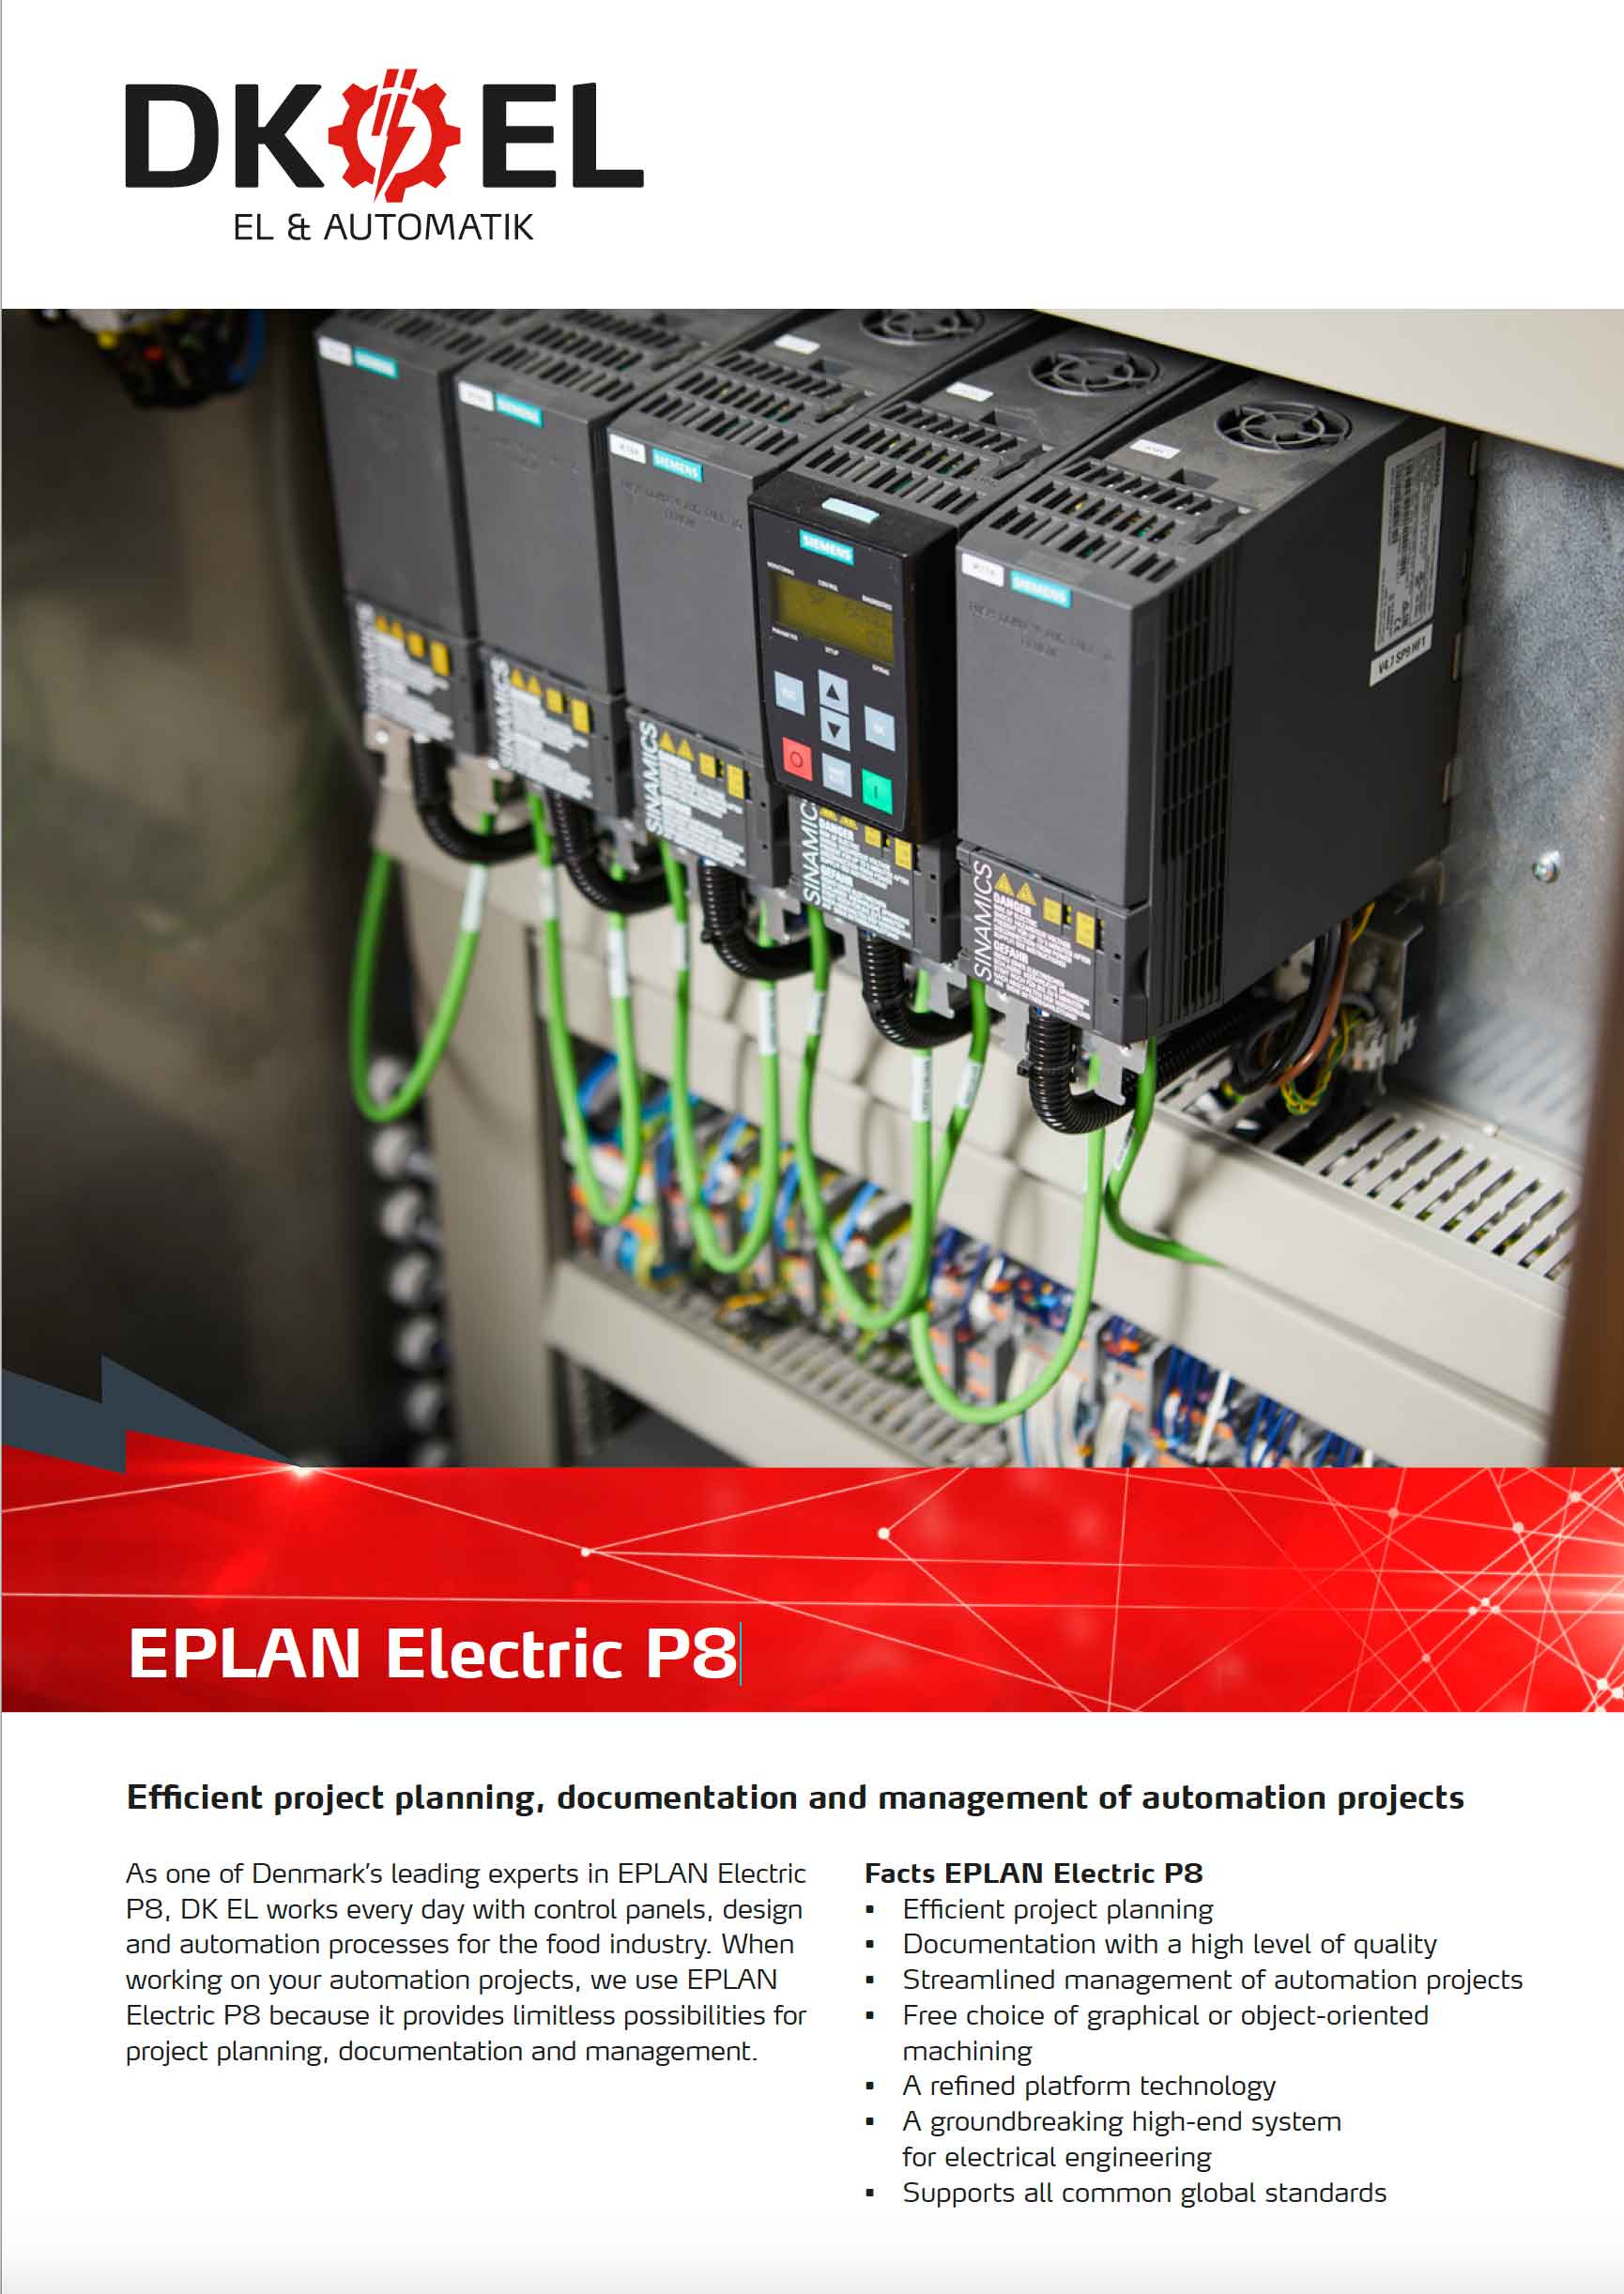 eplan electric p8 2.2 full crack